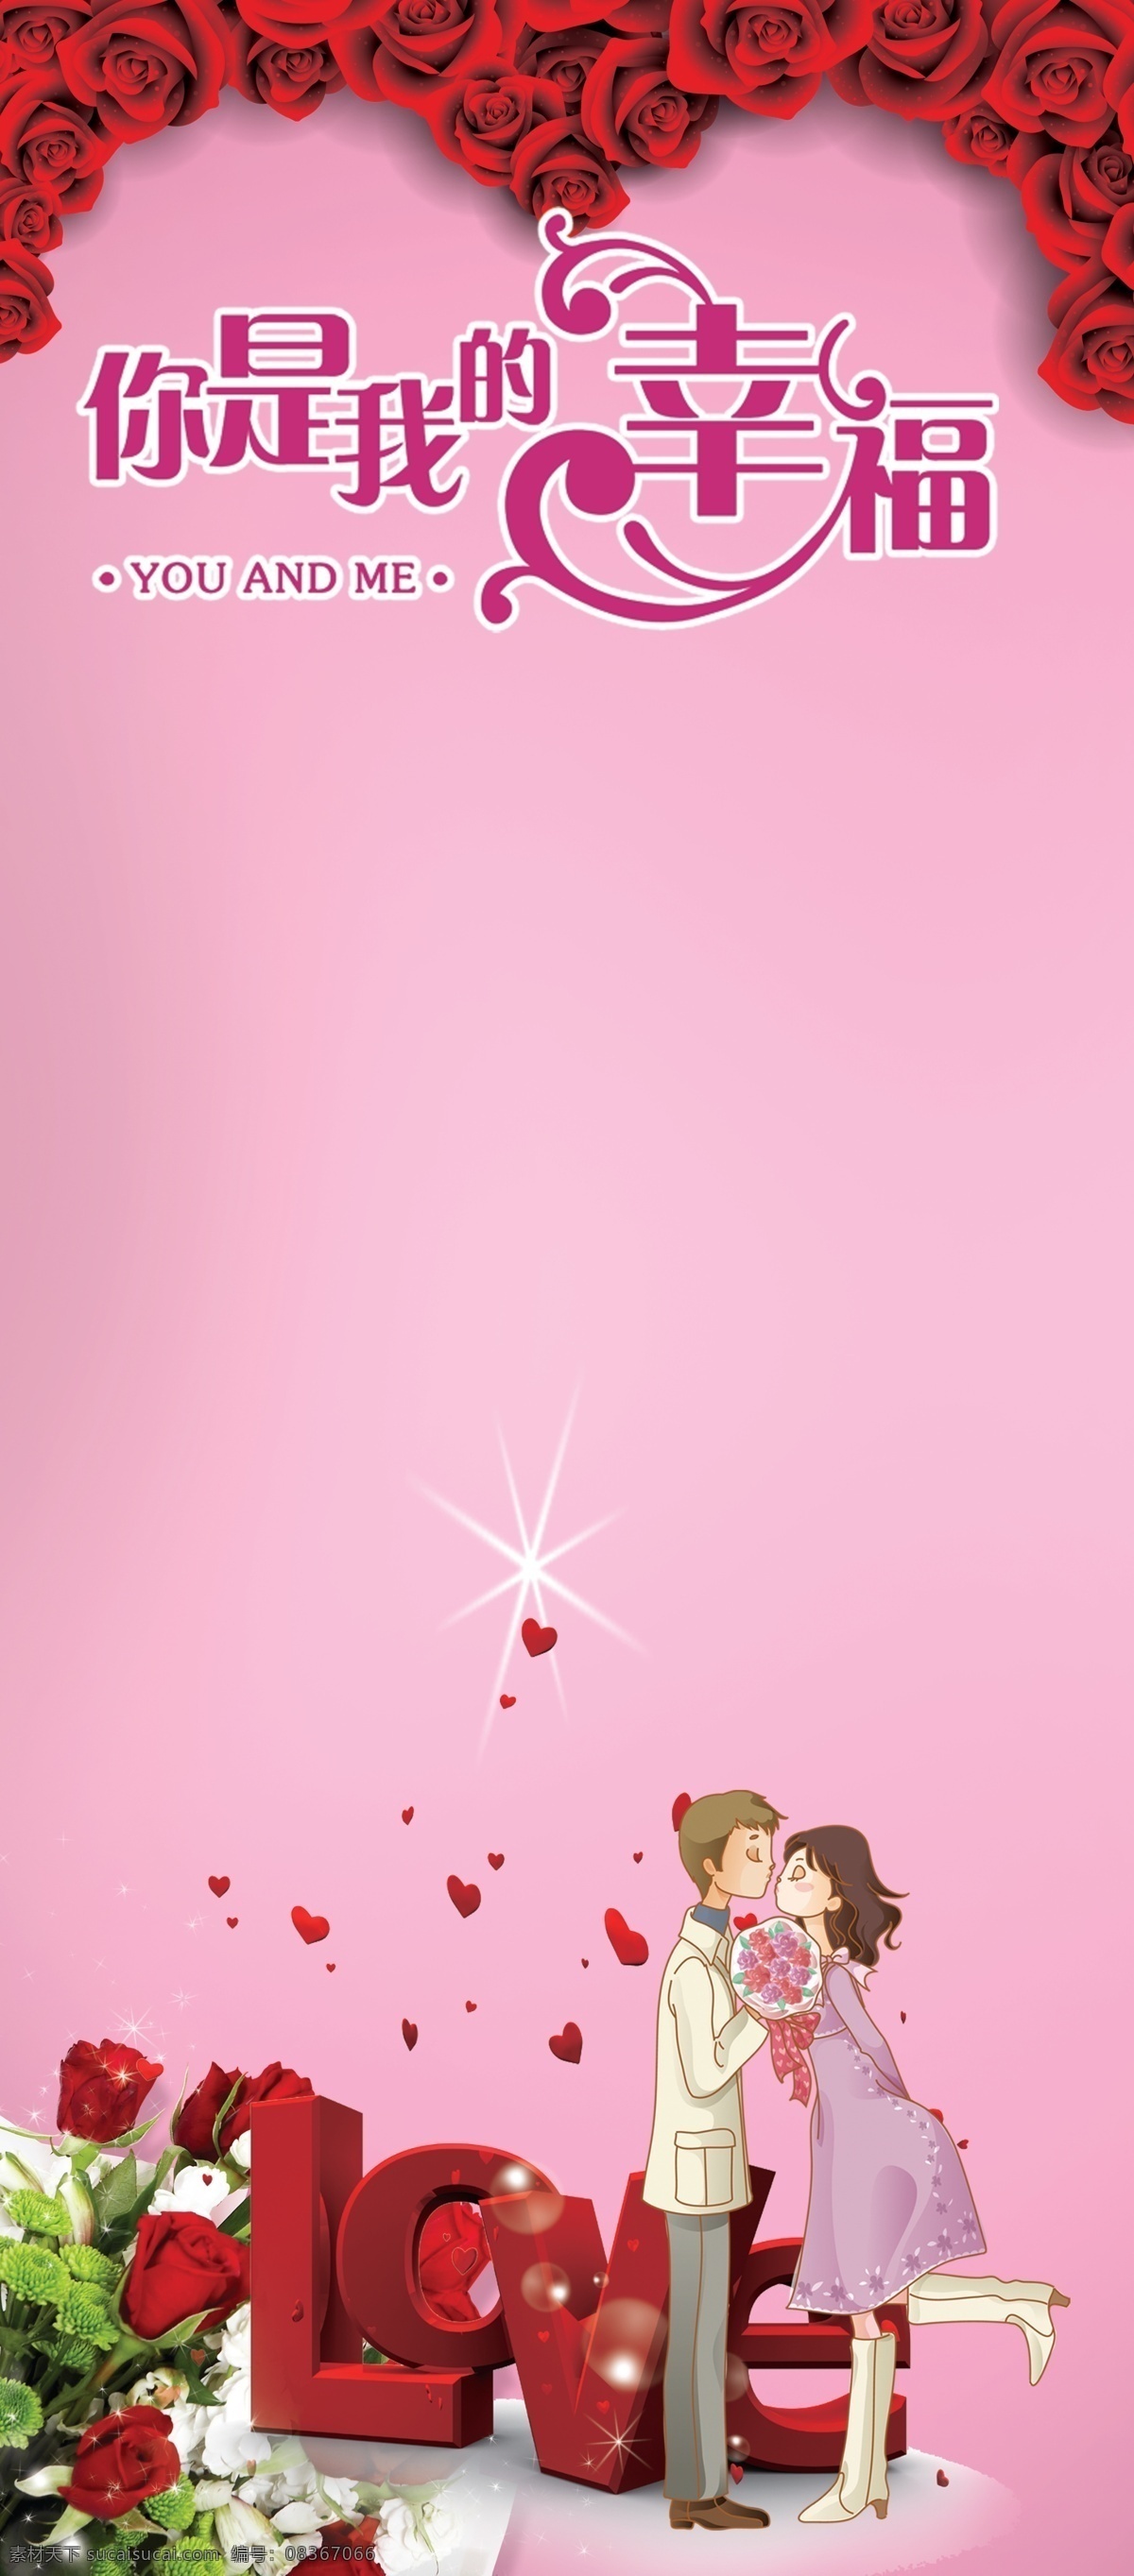 love 广告设计模板 浪漫玫瑰花 恋人 星点 源文件 展板模板 浪漫 结婚 展板 模板下载 浪漫结婚展板 你是我的幸福 其他展板设计